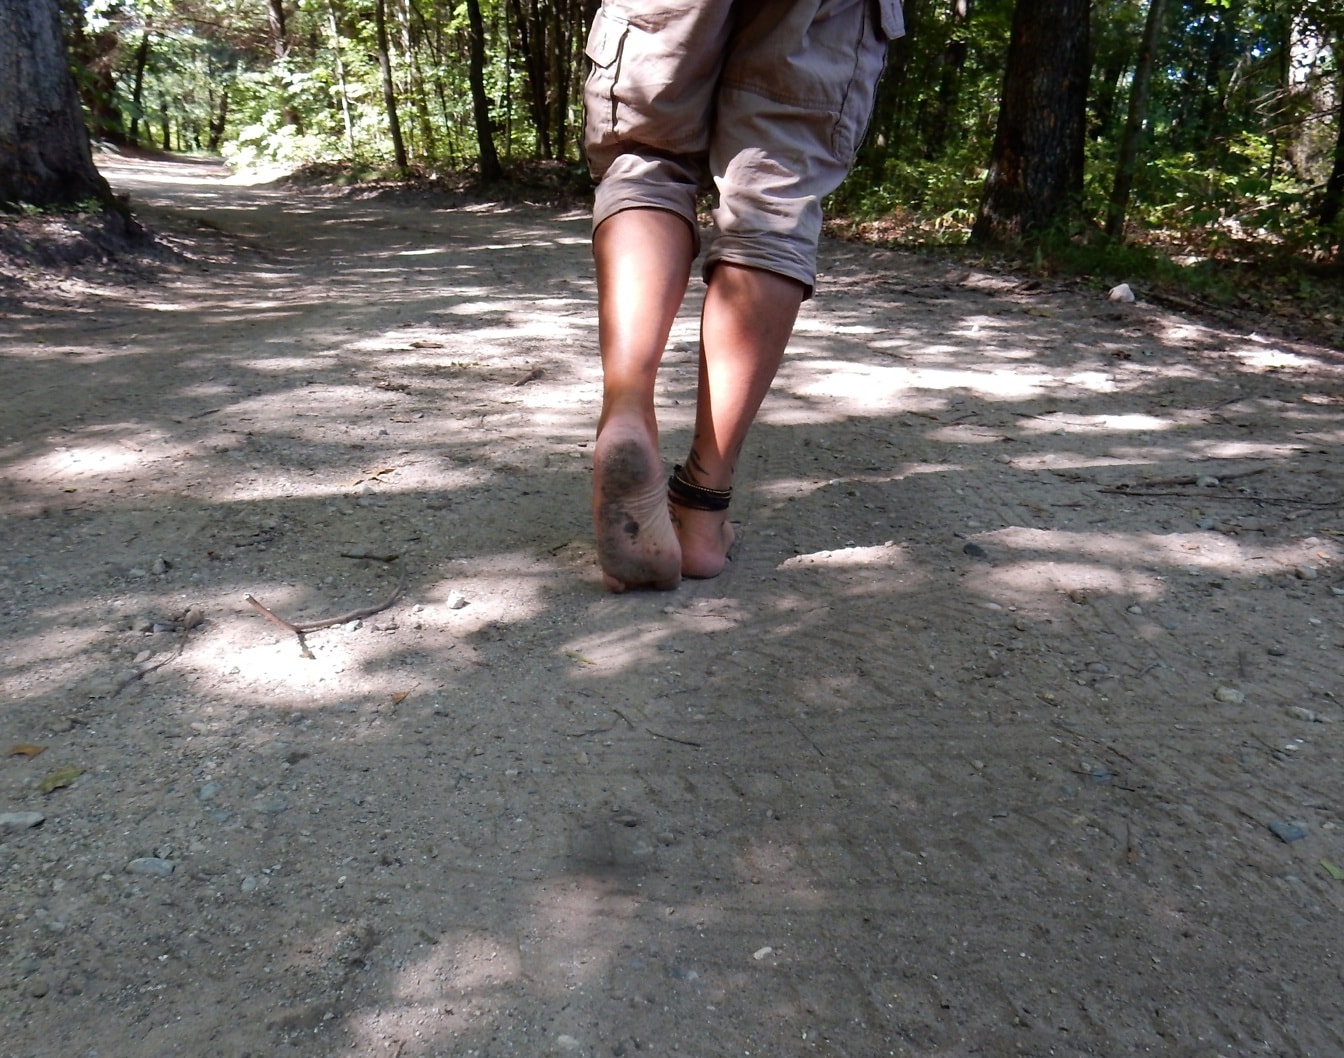 Homme marchant pieds nus sur une route forestière sale